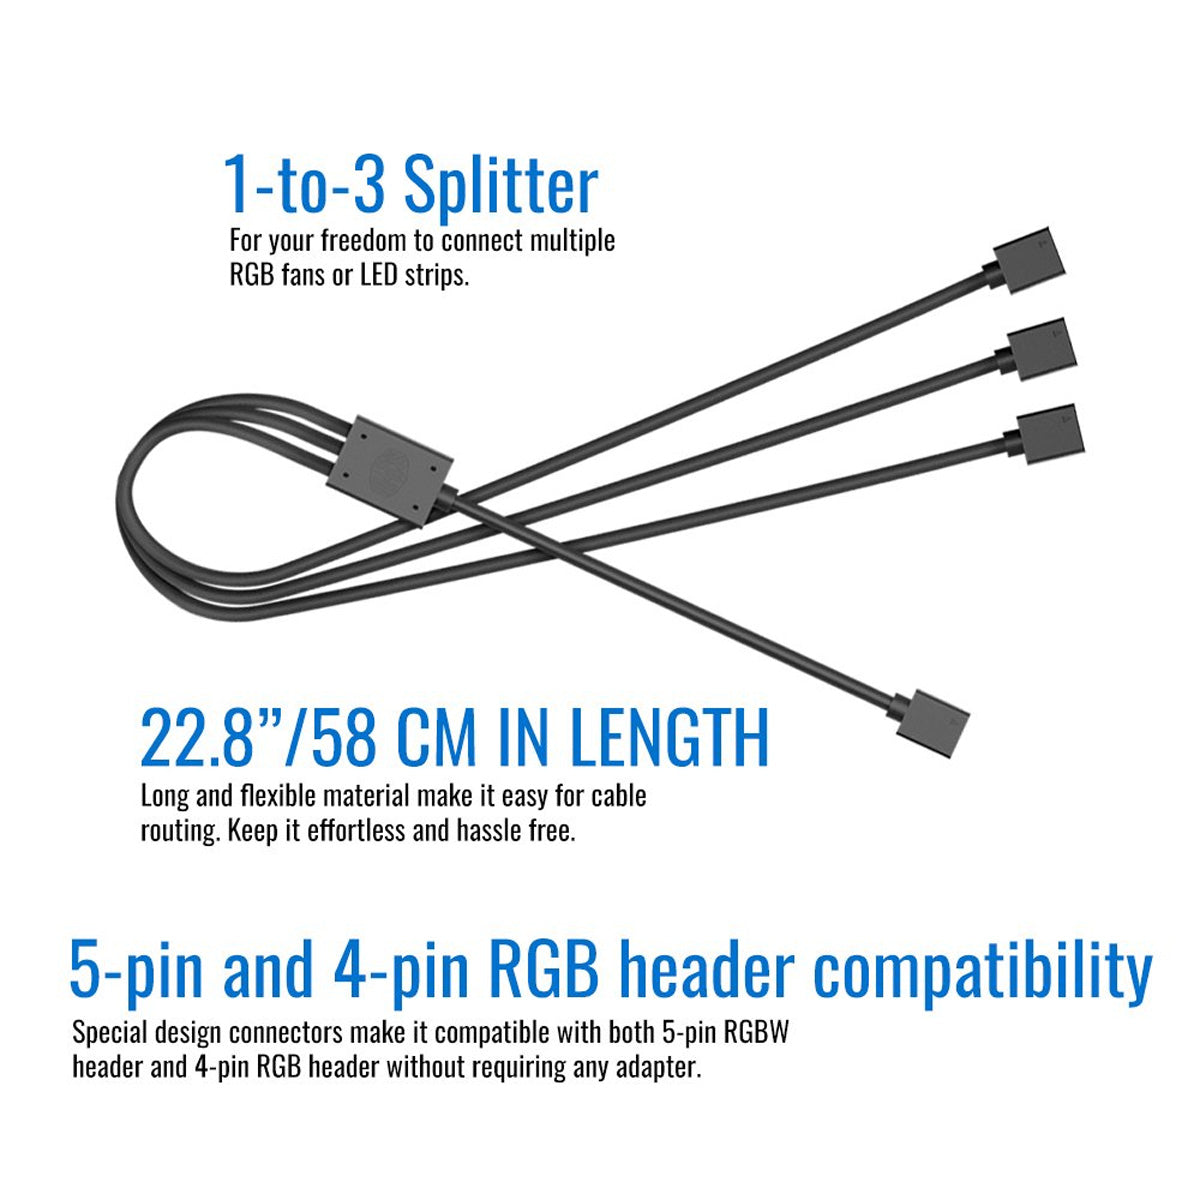 Cooler Master 1-टू-3 RGB स्प्लिटर केबल 4-पिन RGB हैडर के साथ